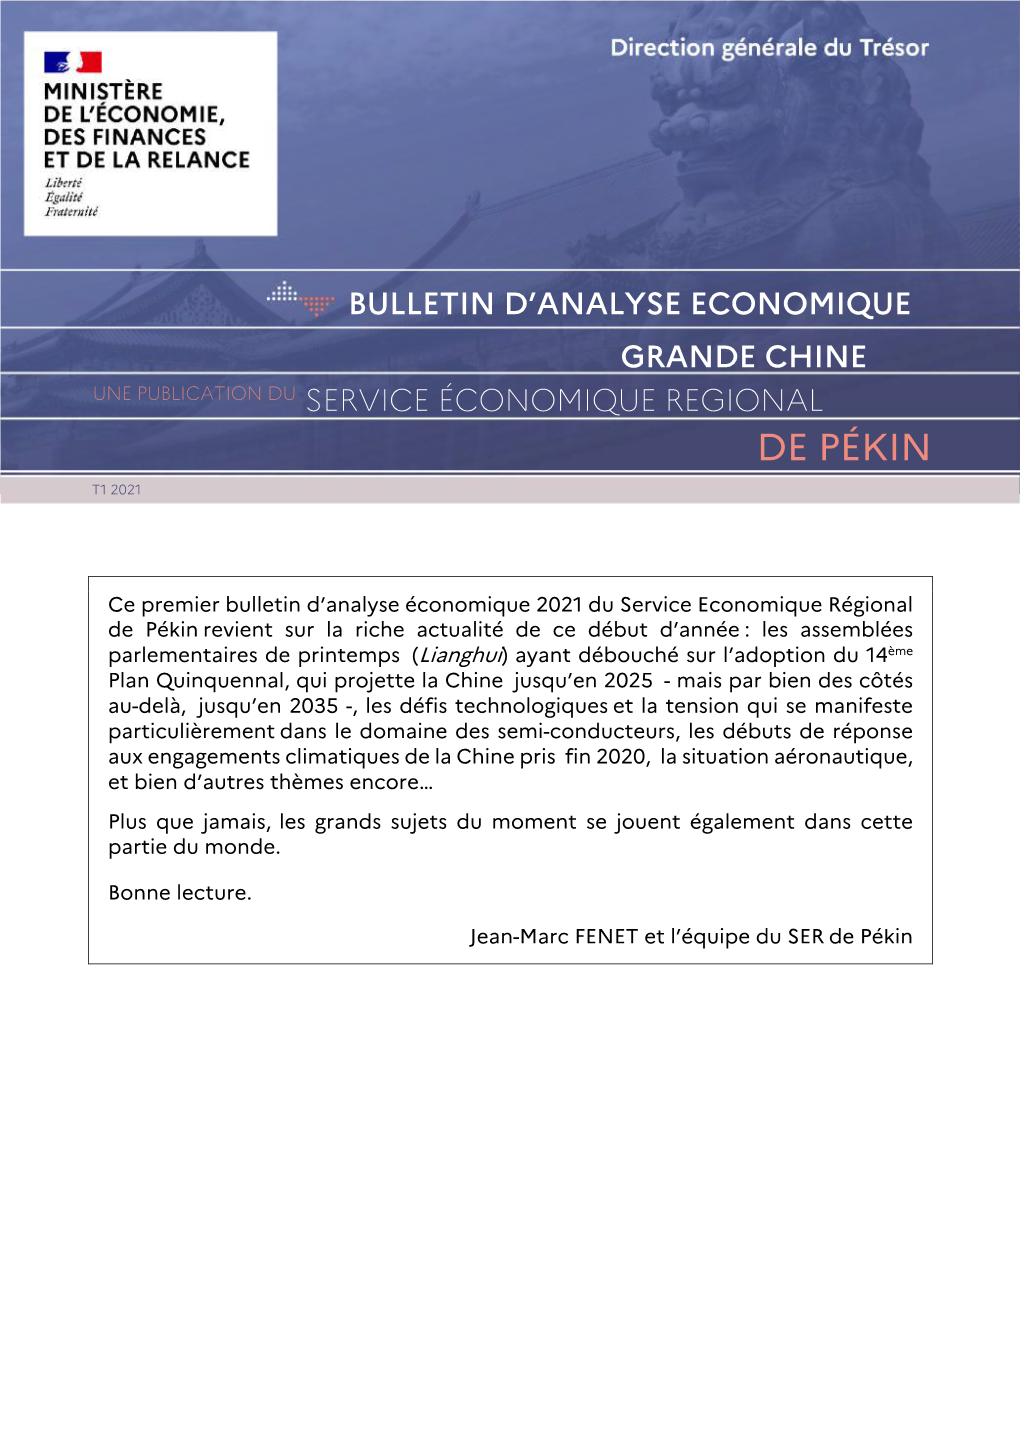 File Download Bulletin D'analyse Économique Du SER De Pékin